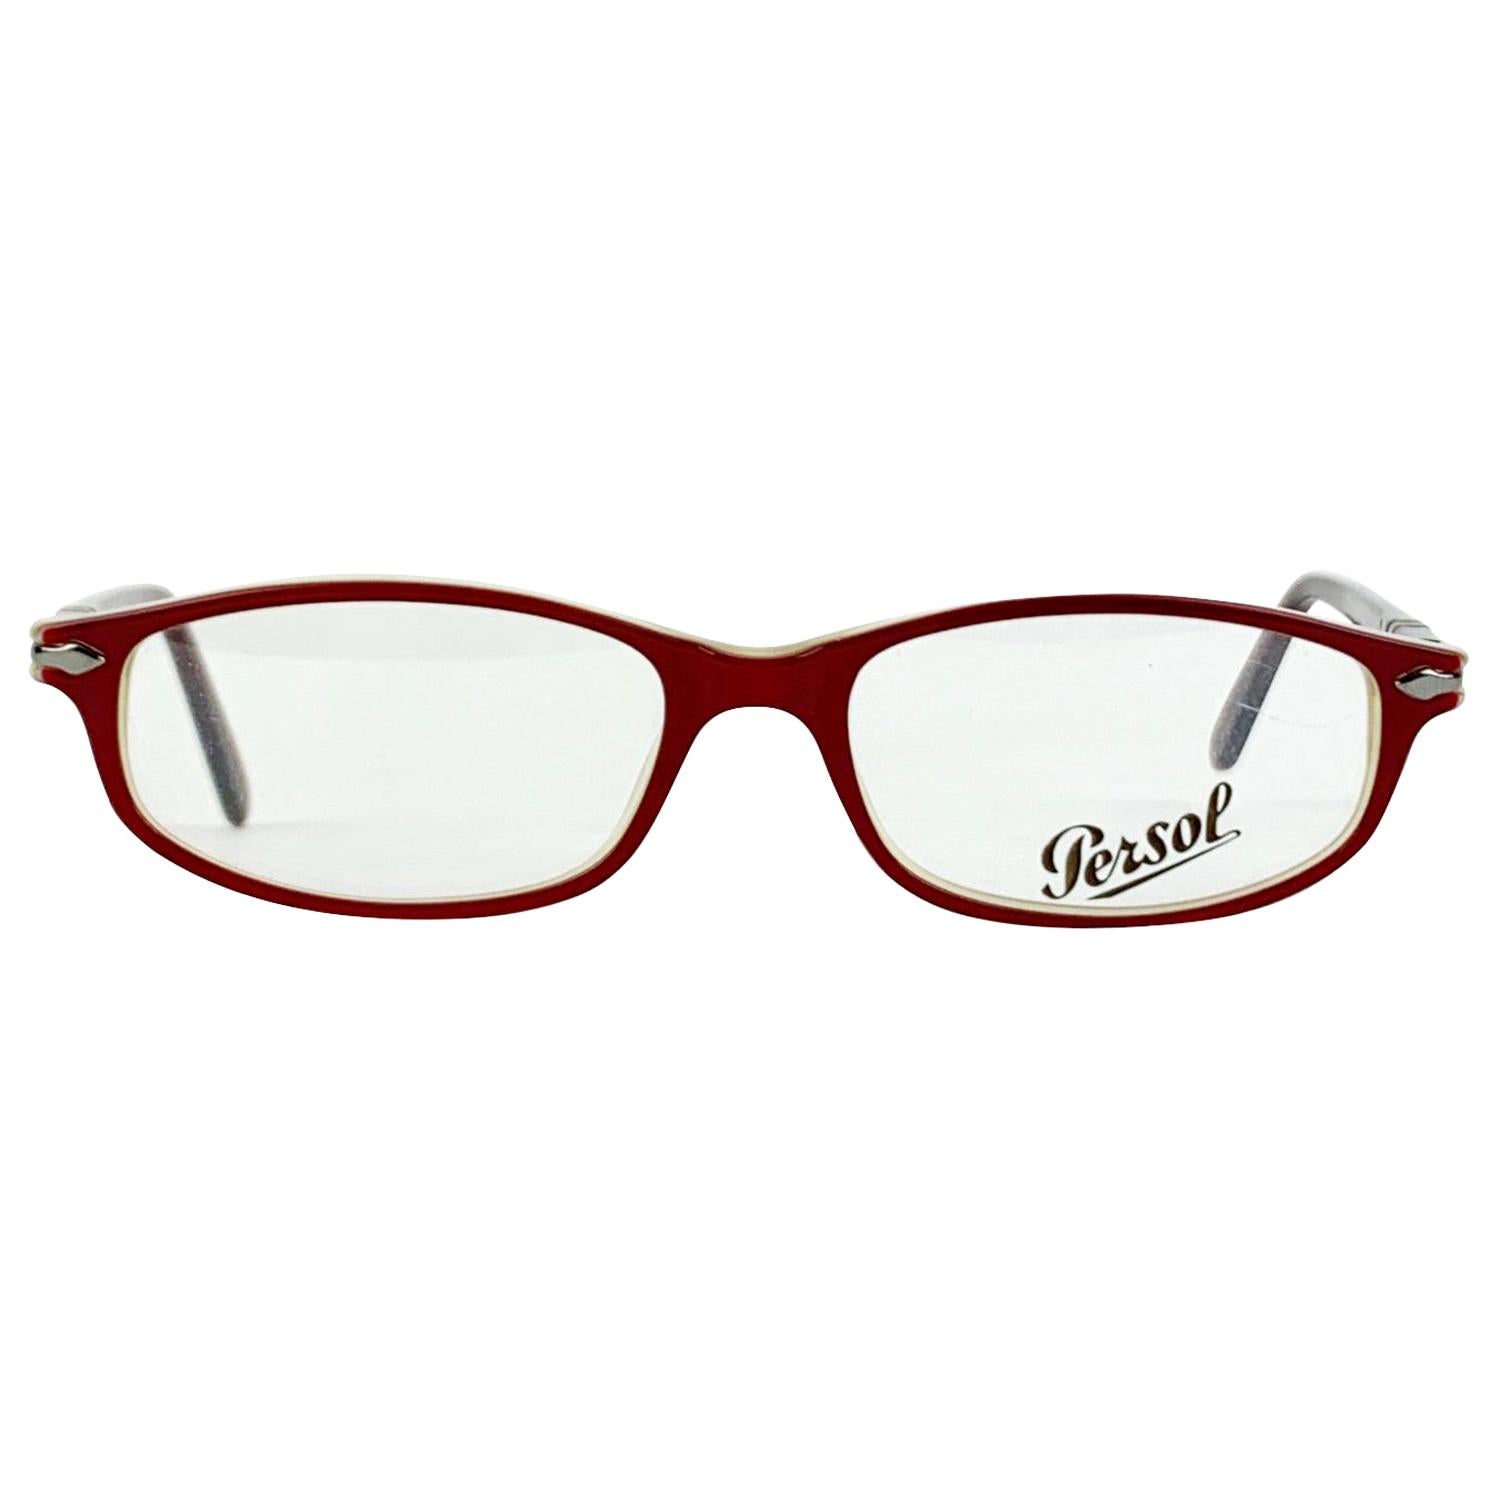 Persol Vintage Mint Unisex 2592-V 218 Red Eyeglasses 51/16 135 mm